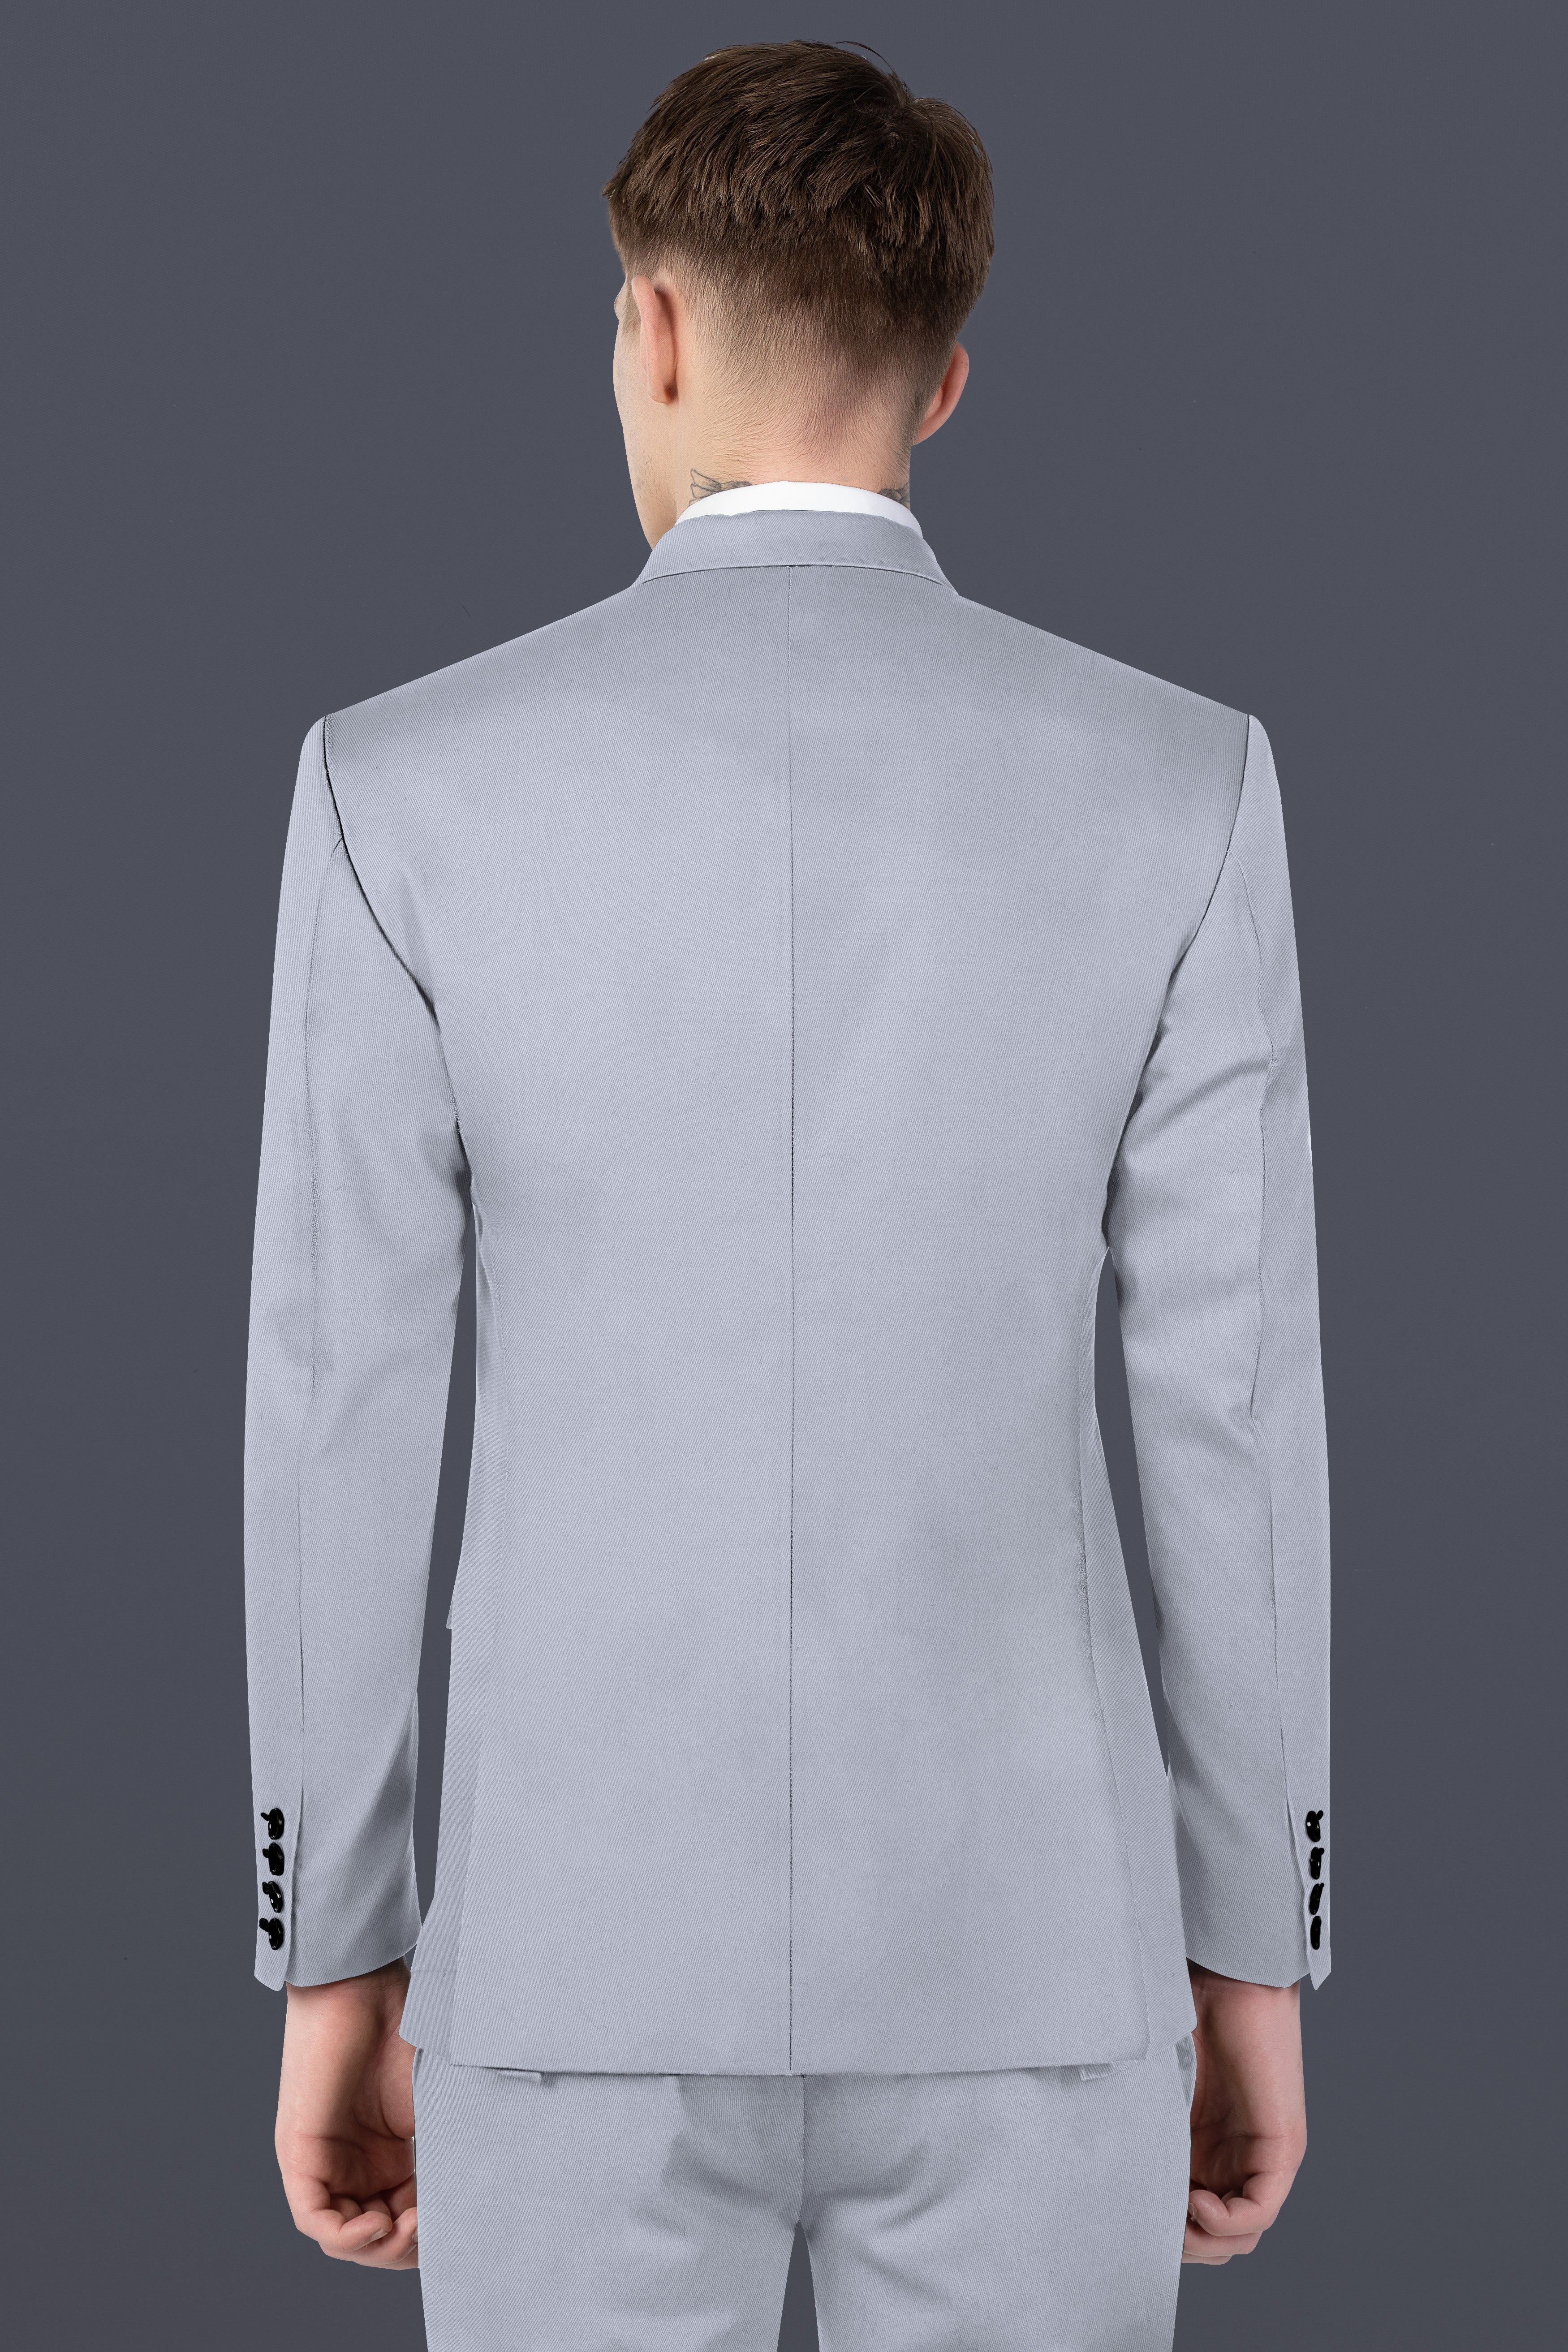 Cadet Grey Solid Premium Cotton Blazer